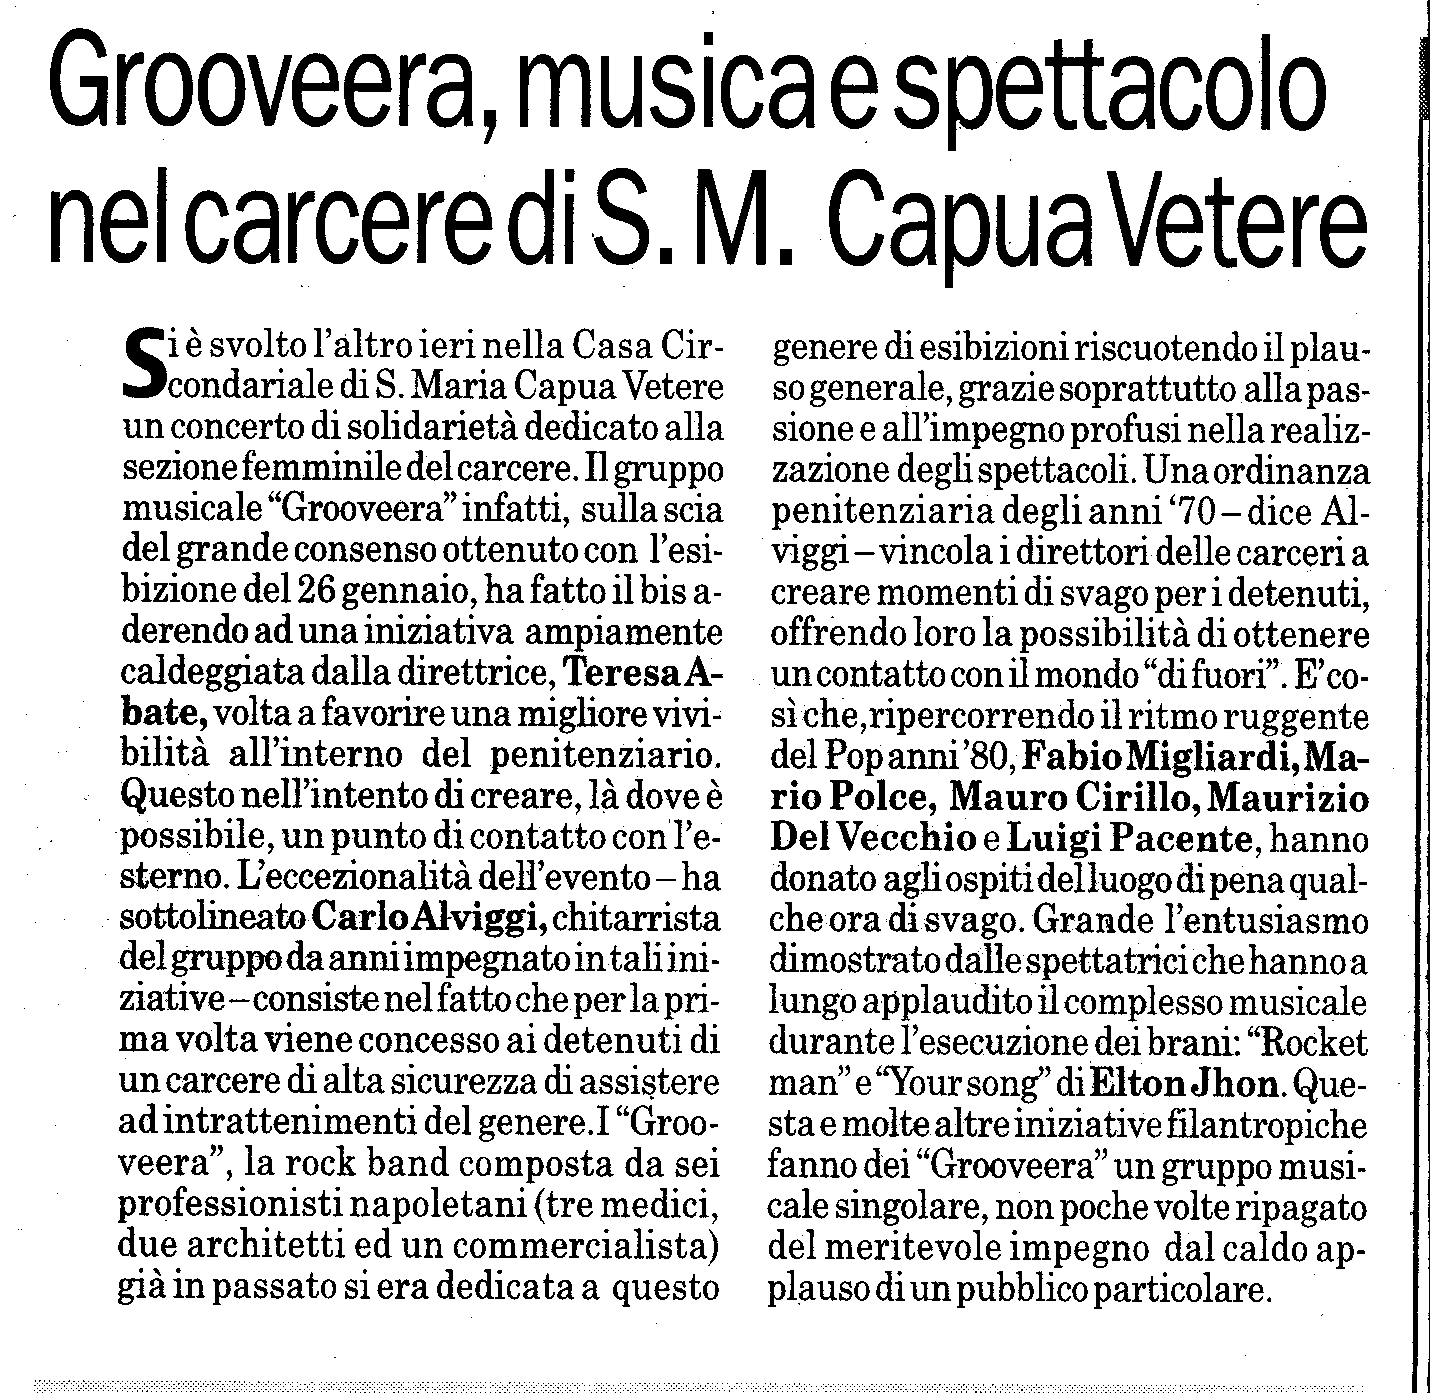 Articolo pubblicato su 'Napoli Più', venerdì 25 marzo 2005